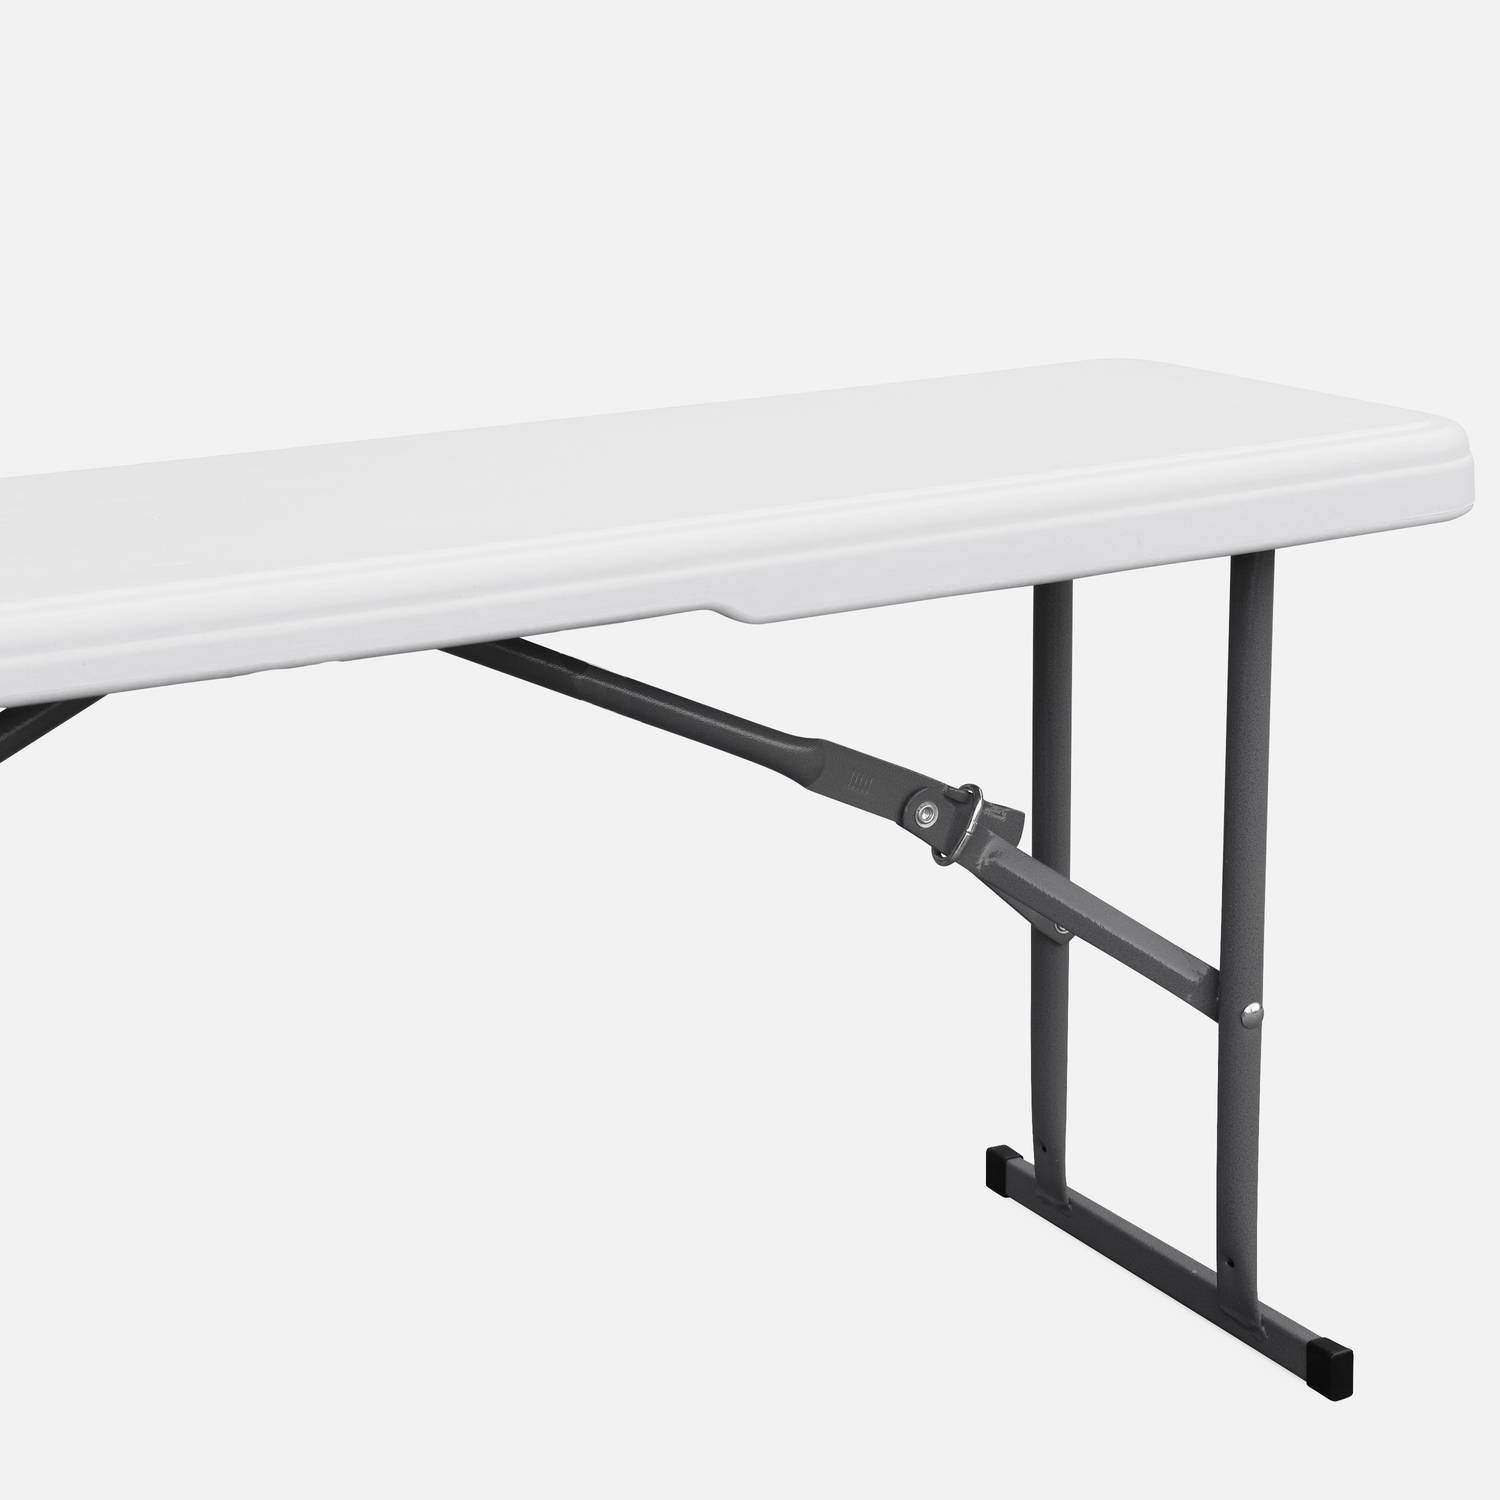 Conjunto mesa y bancos para celebración, 180cm, plegables, con asa de transporte, plástico blanco Photo5